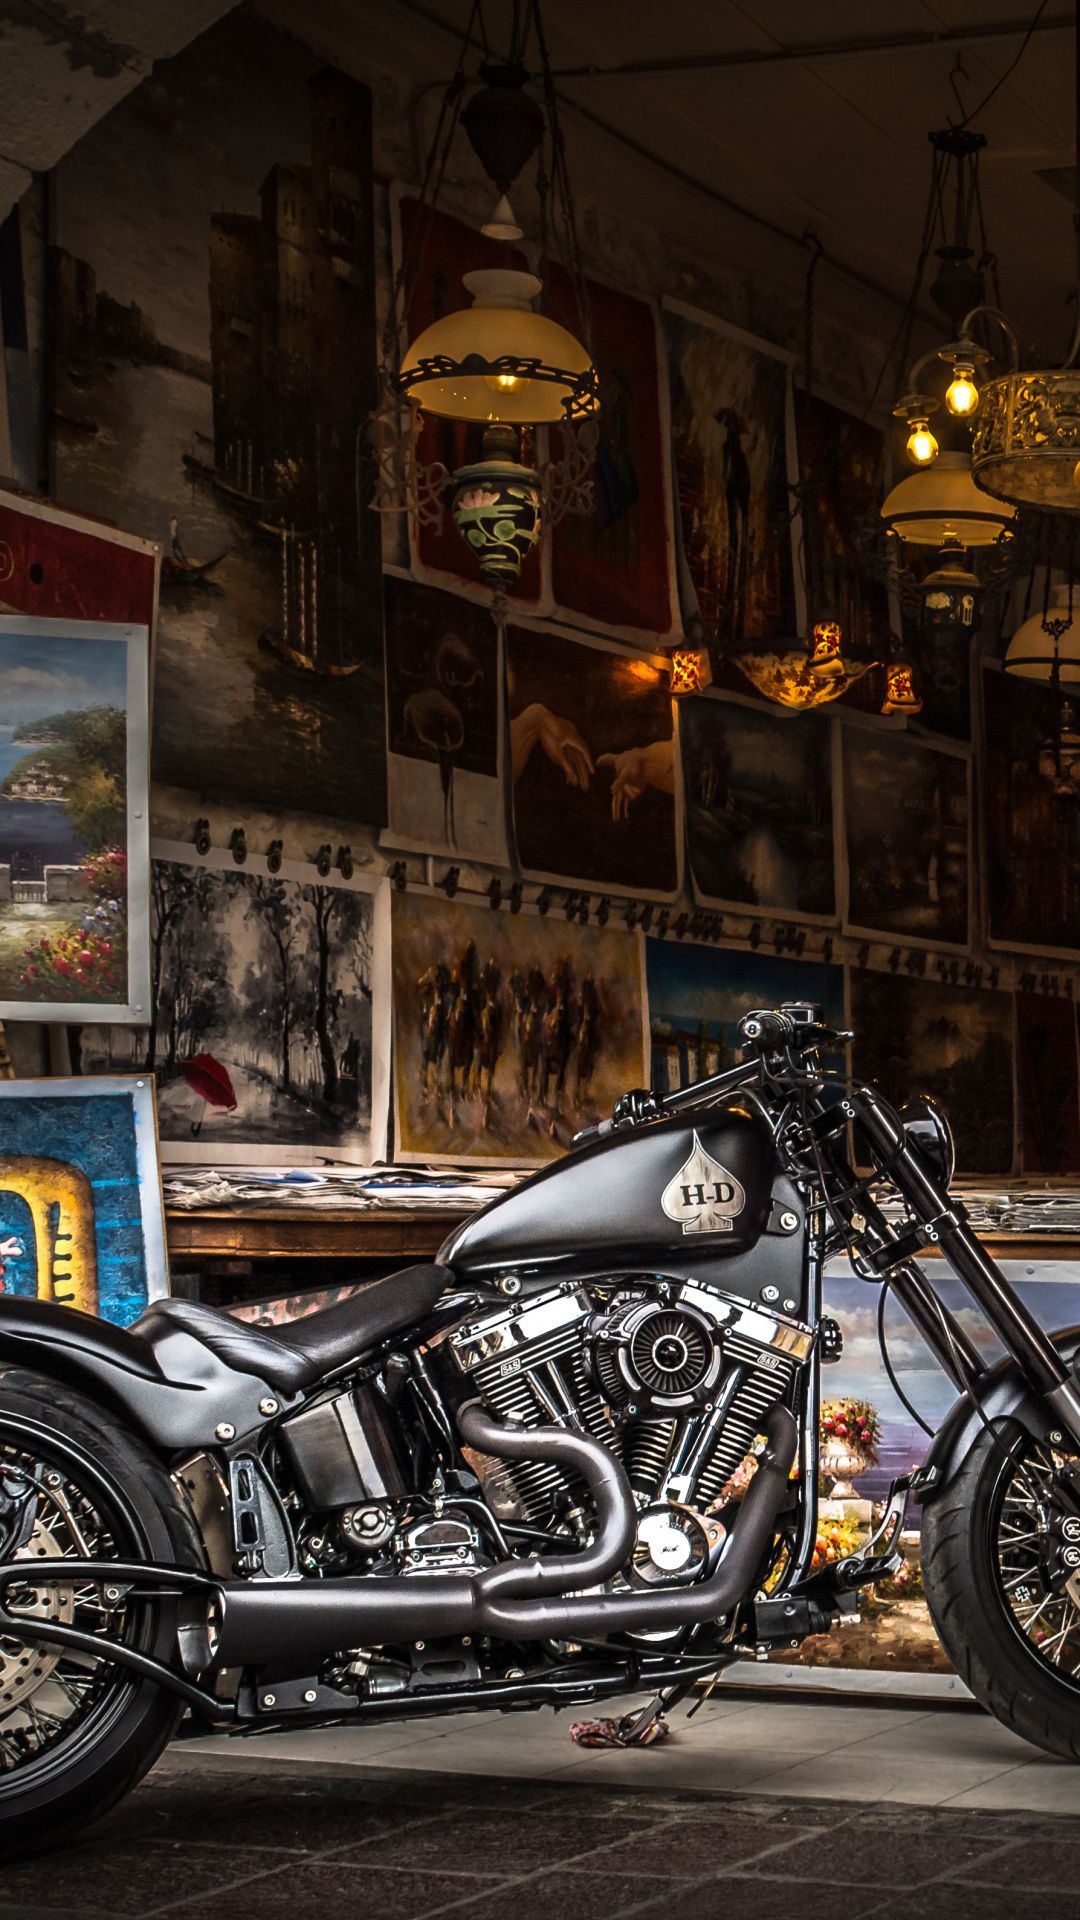 Harley Davidson Wallpapers - Top 35 Best Harley Davidson Backgrounds  Download